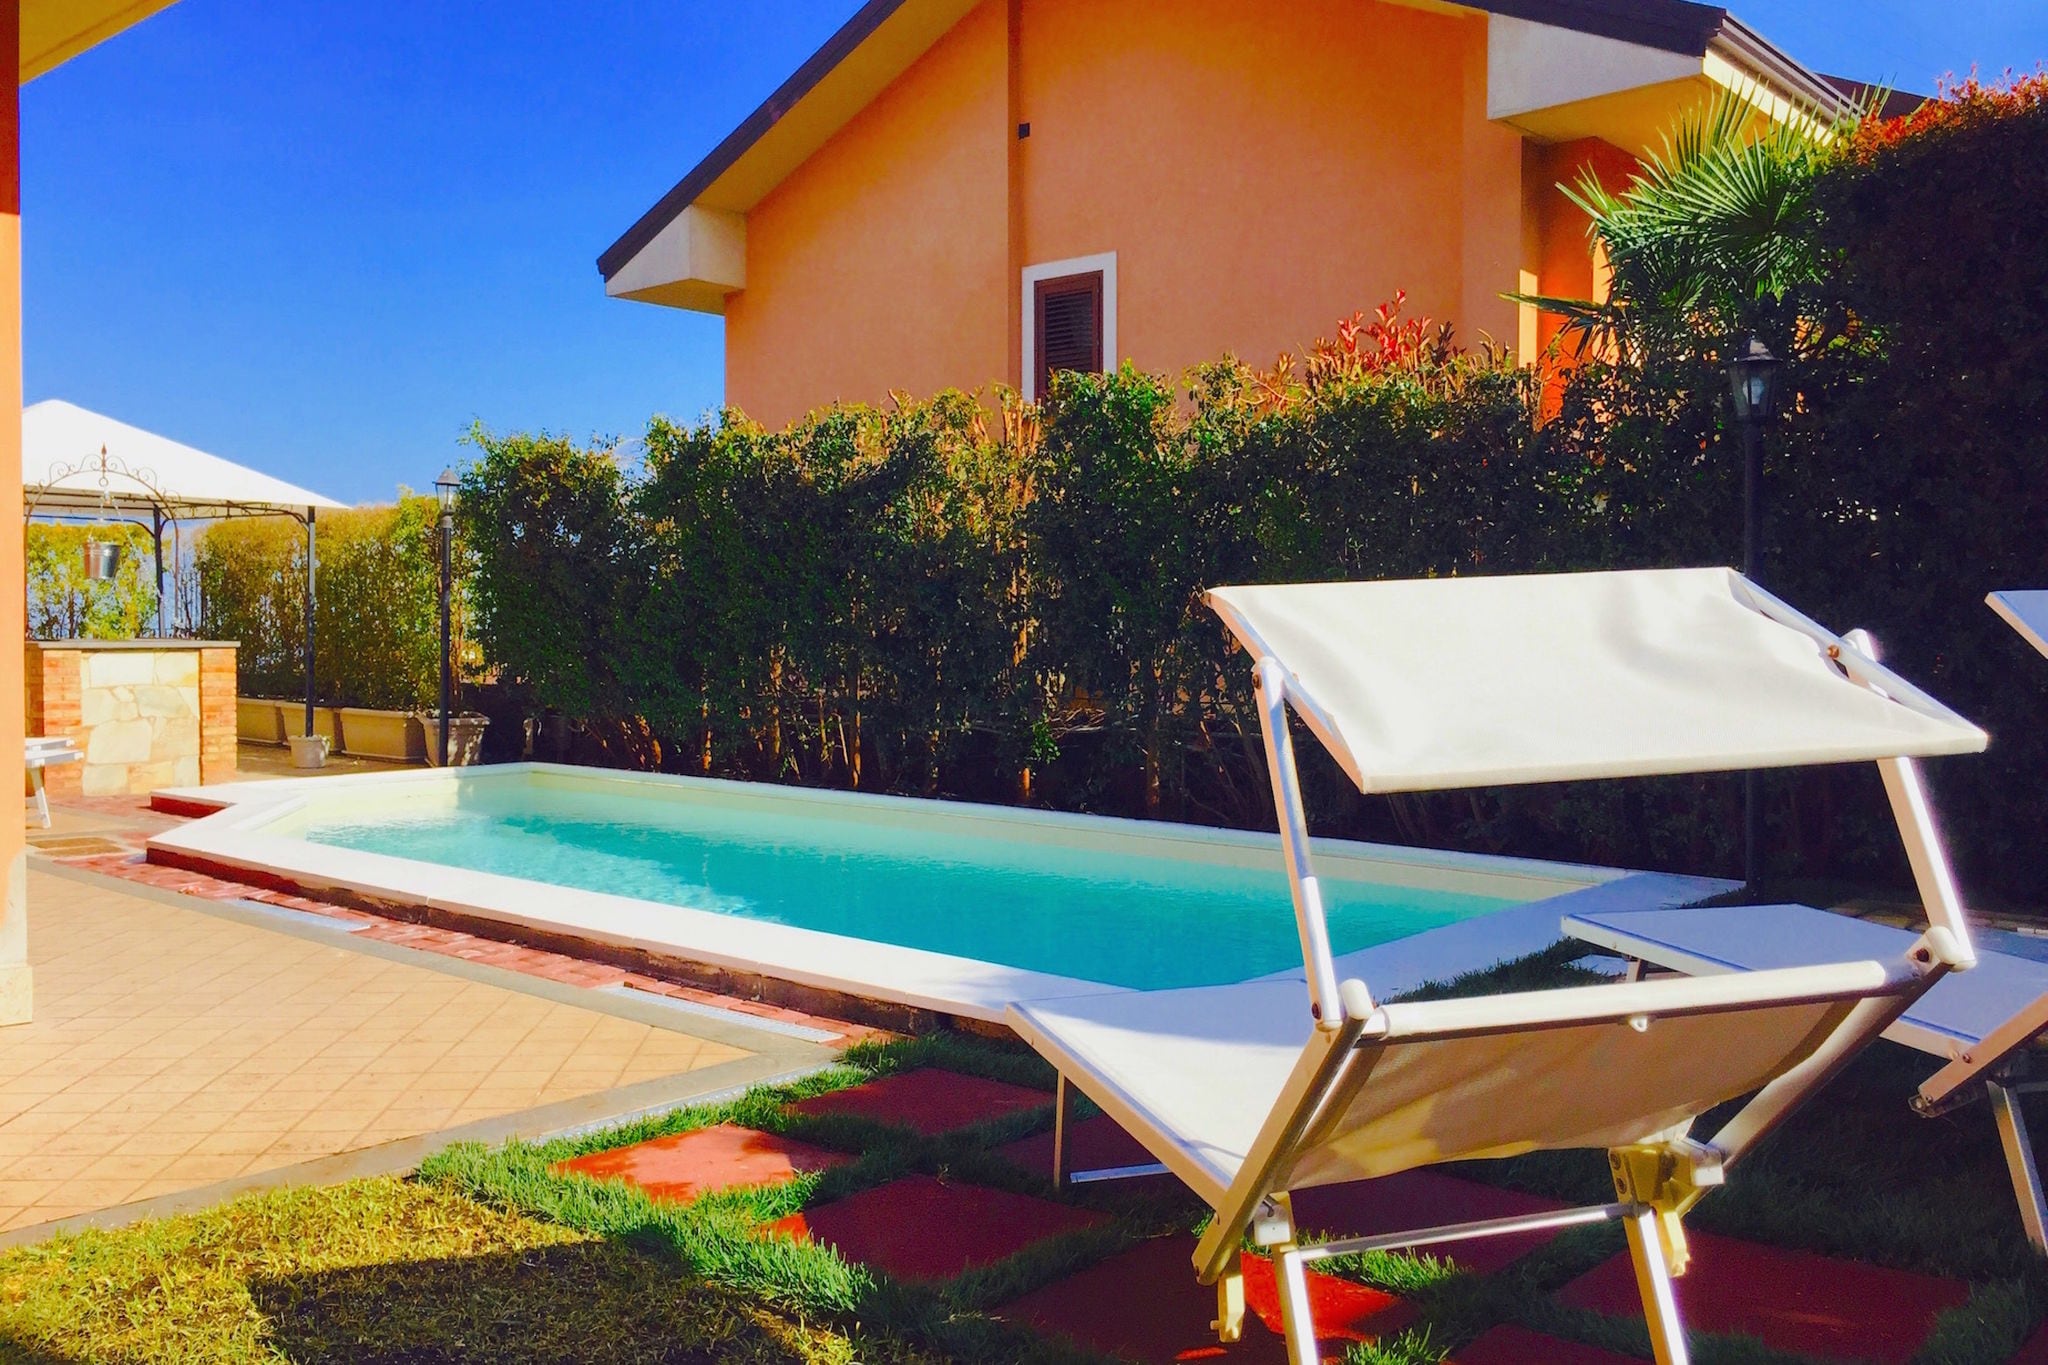 Villa avec piscine privée, située dans un quartier résidentiel au pied de l'Etna